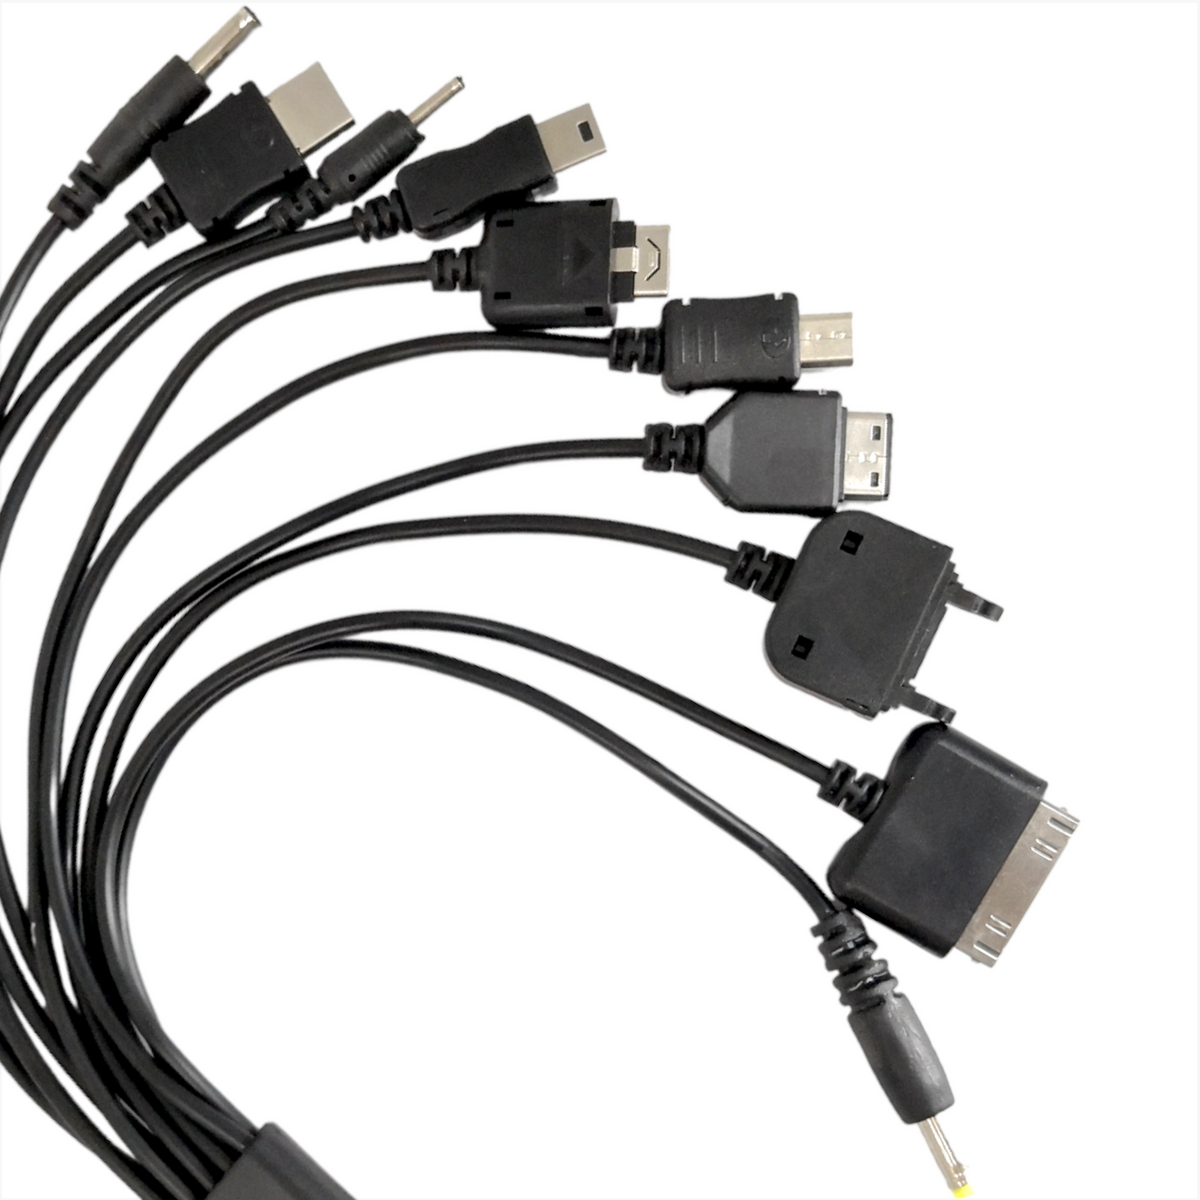 Cable USB Multicargador Para Celulares Tipo Pulpo Usb 10 En 1